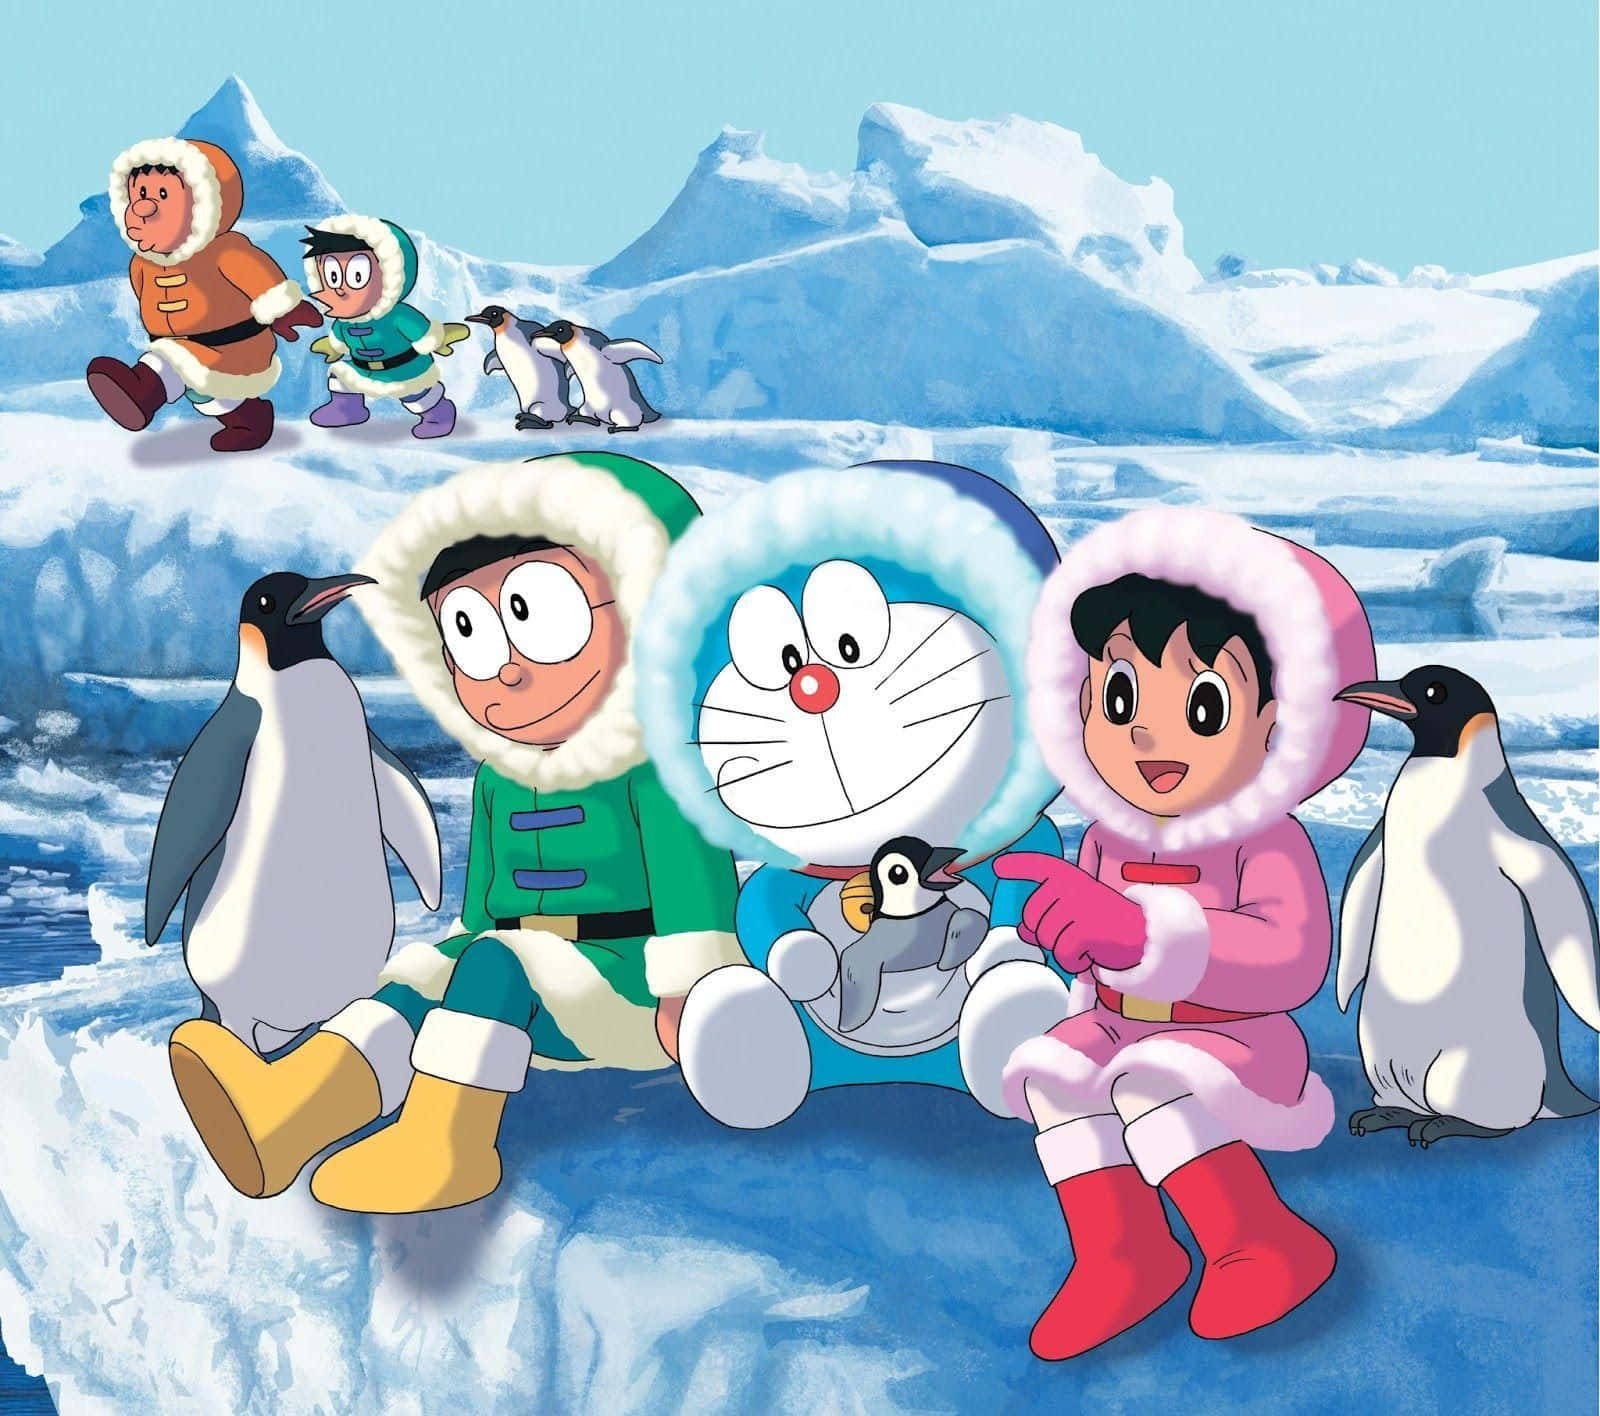 Doraemonden Älskade Robotkatten Från Japan